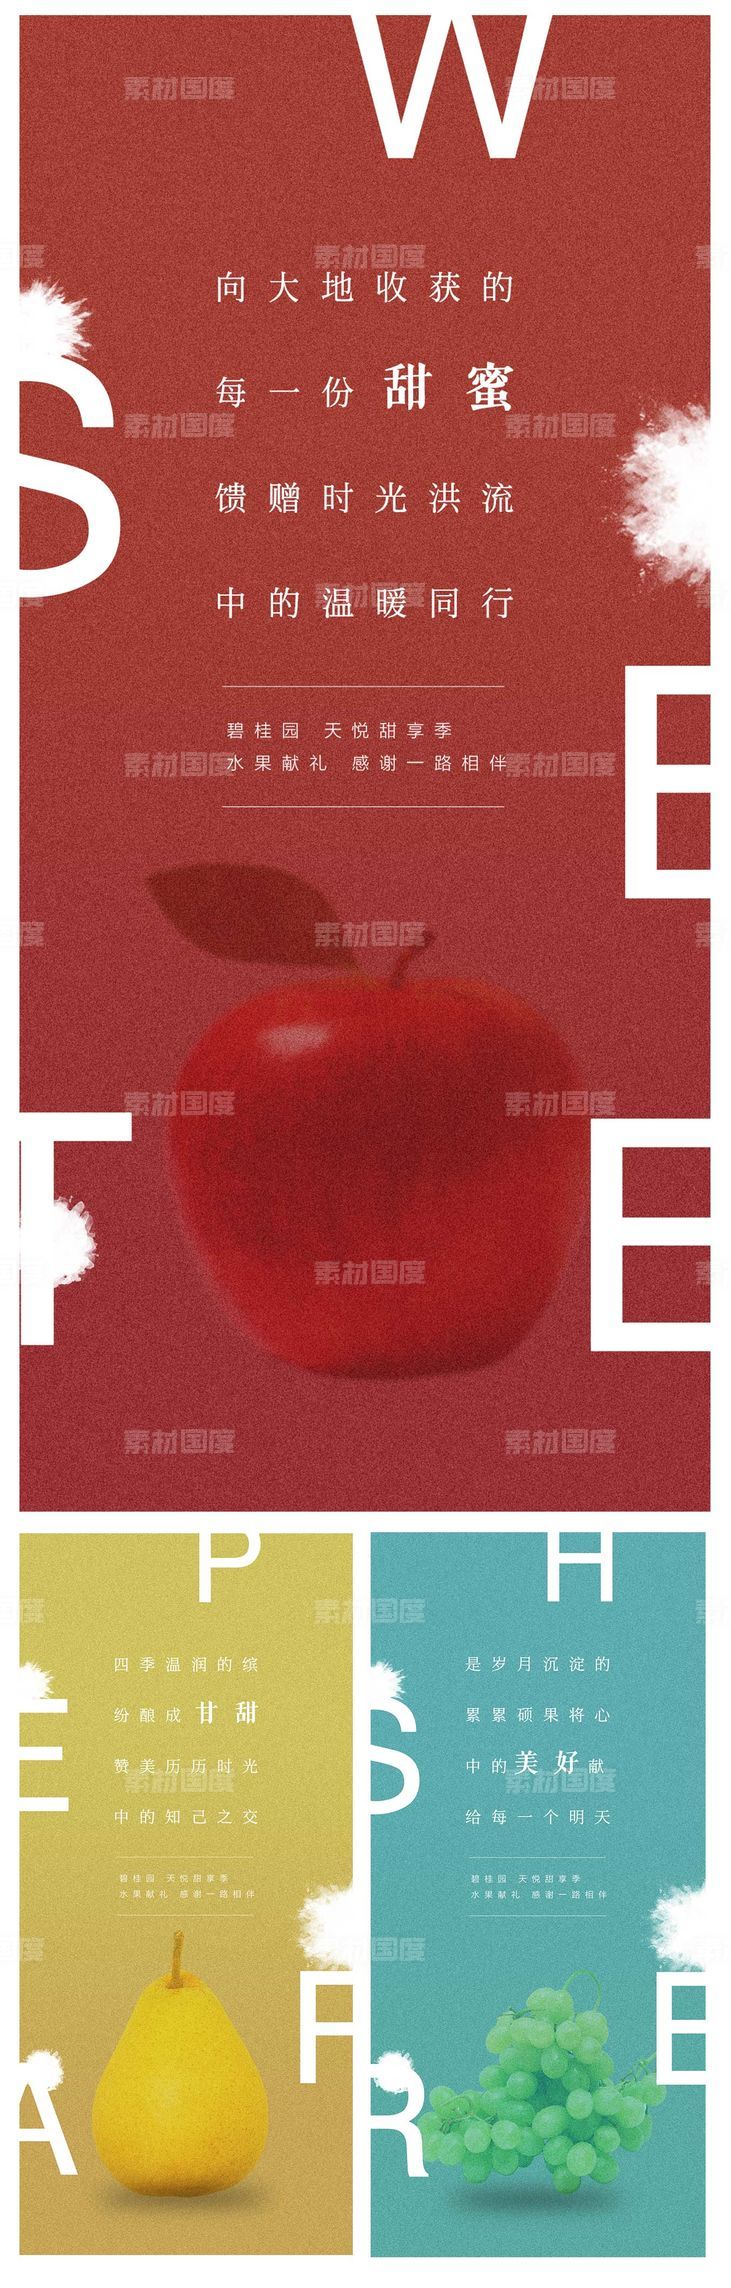 地产水果价值点系列海报